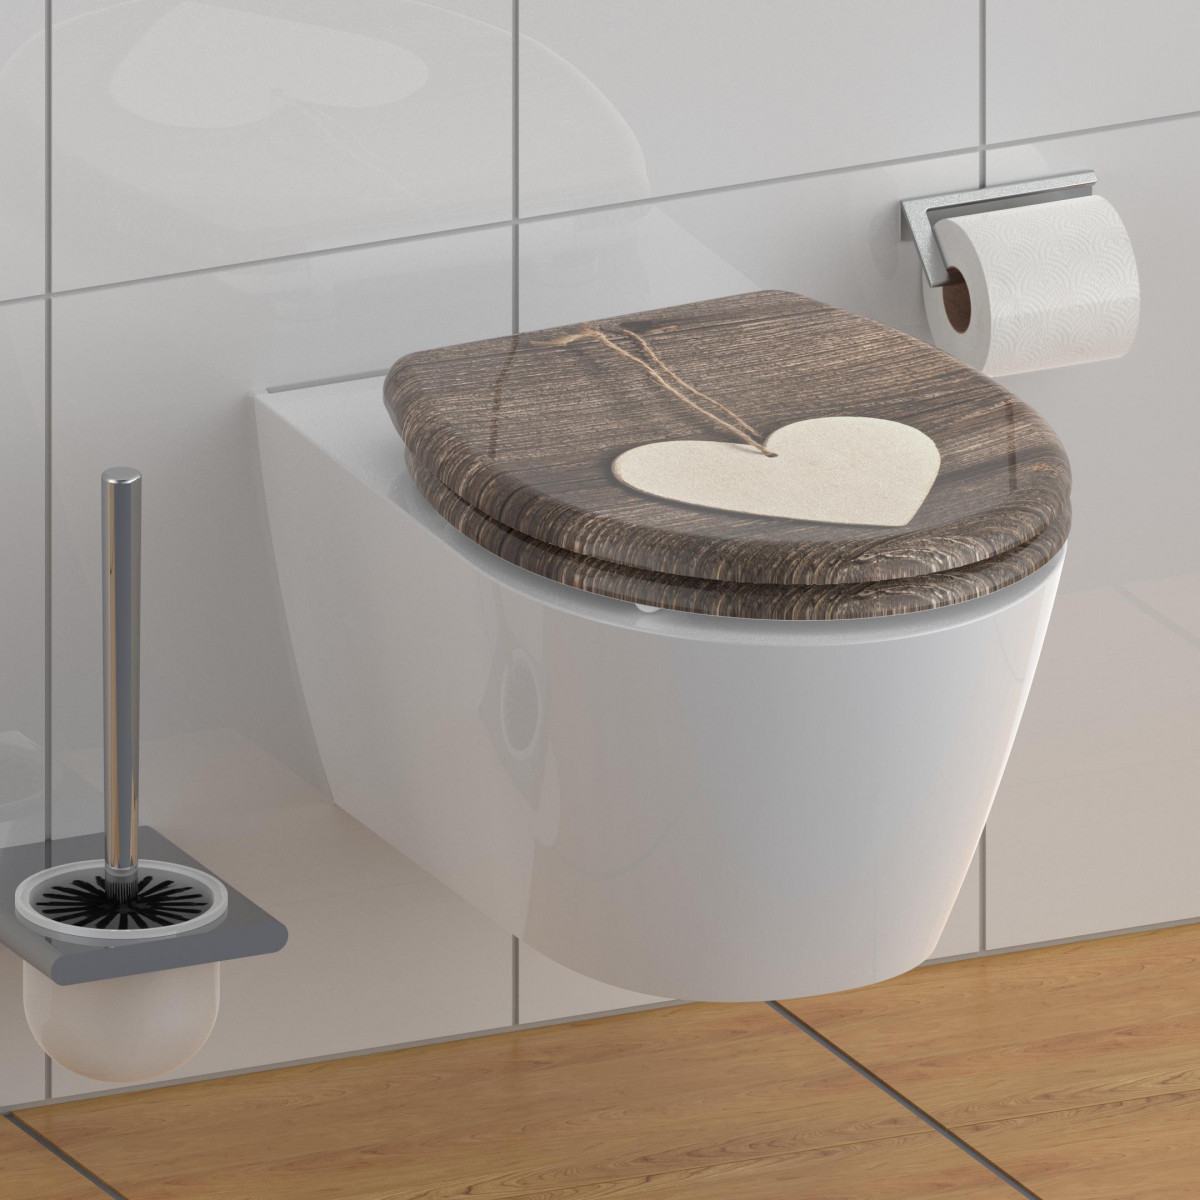 Duroplast WC-Sitz WOOD HEART, Herz Motiv, mit Absenkautomatik und Schnellverschluss